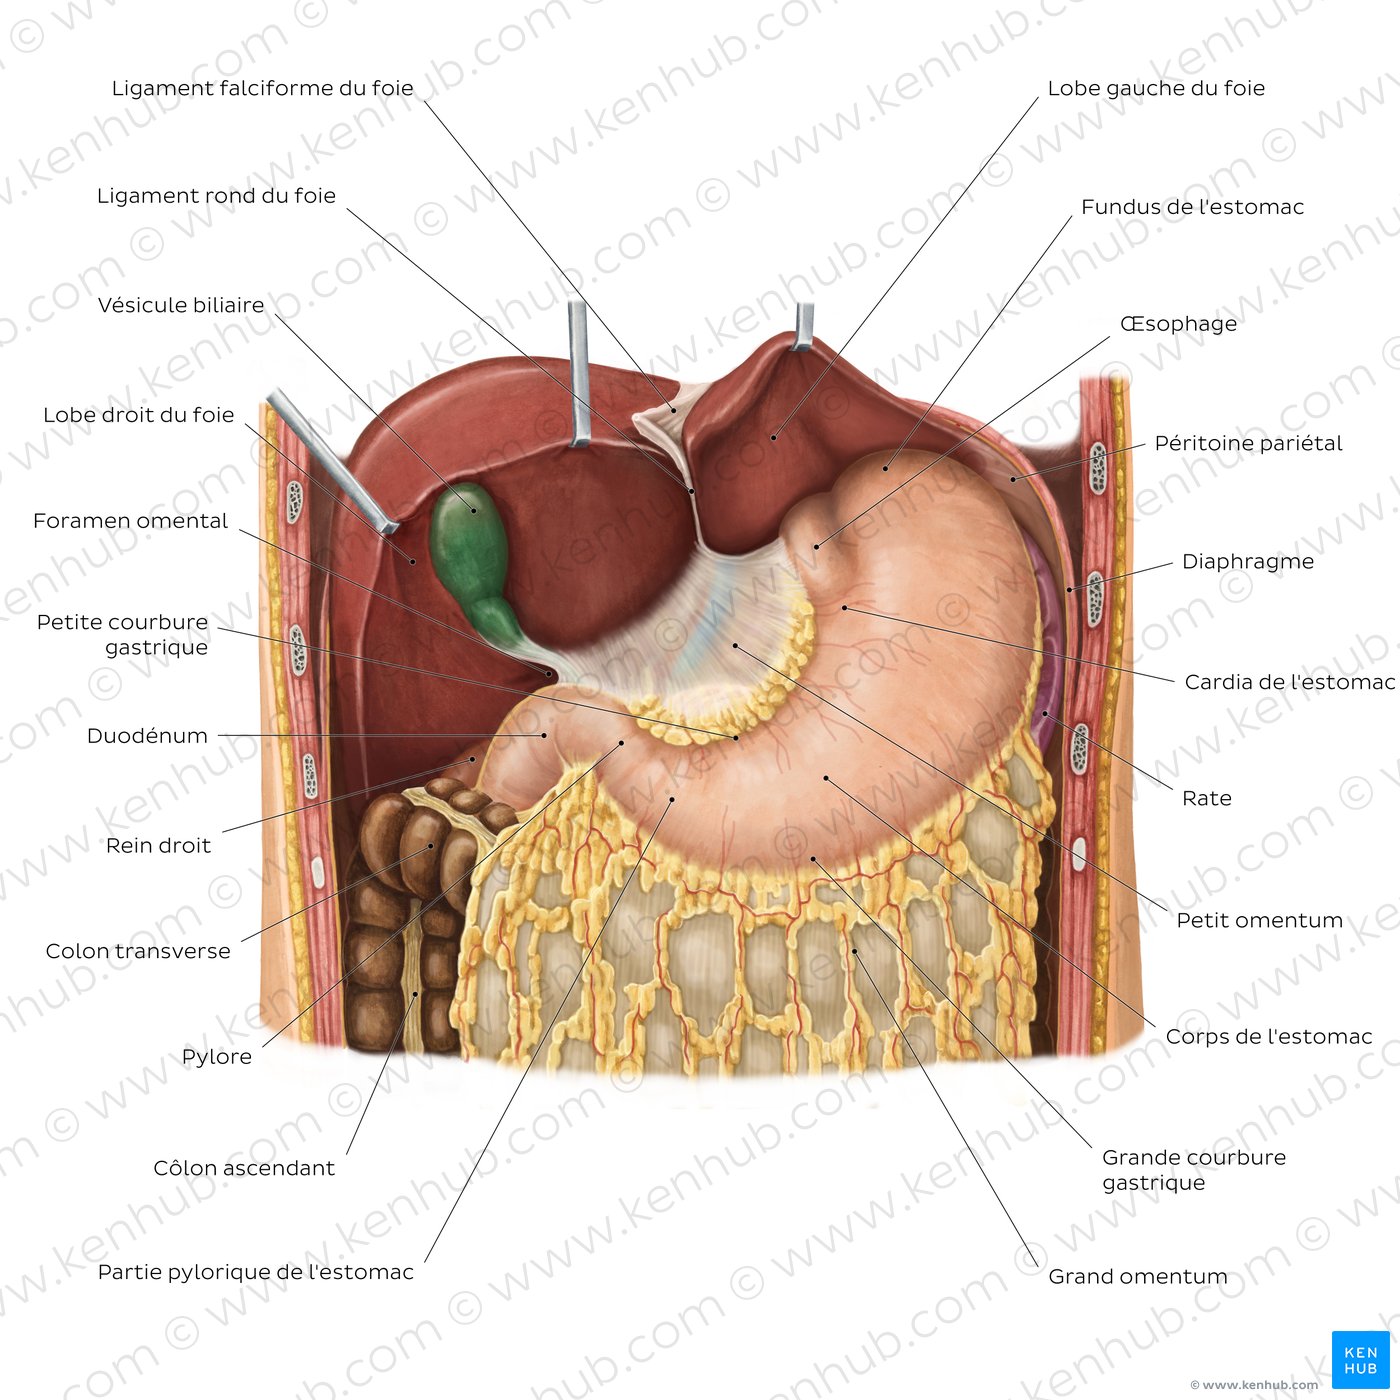 Localisation anatomique de l'estomac (schéma)